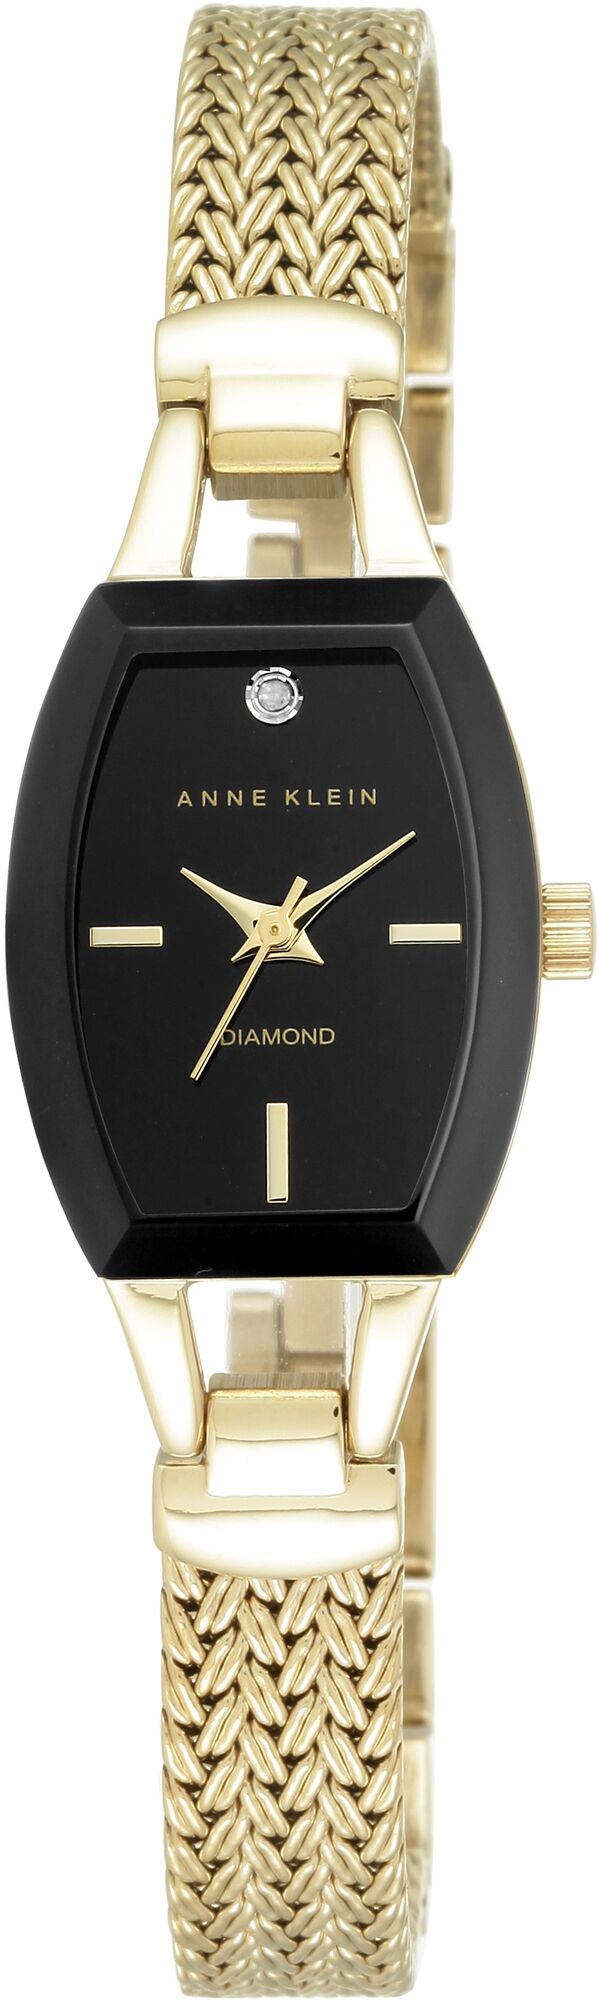 Женские наручные часы Anne Klein Diamond Dial 2184BKGB